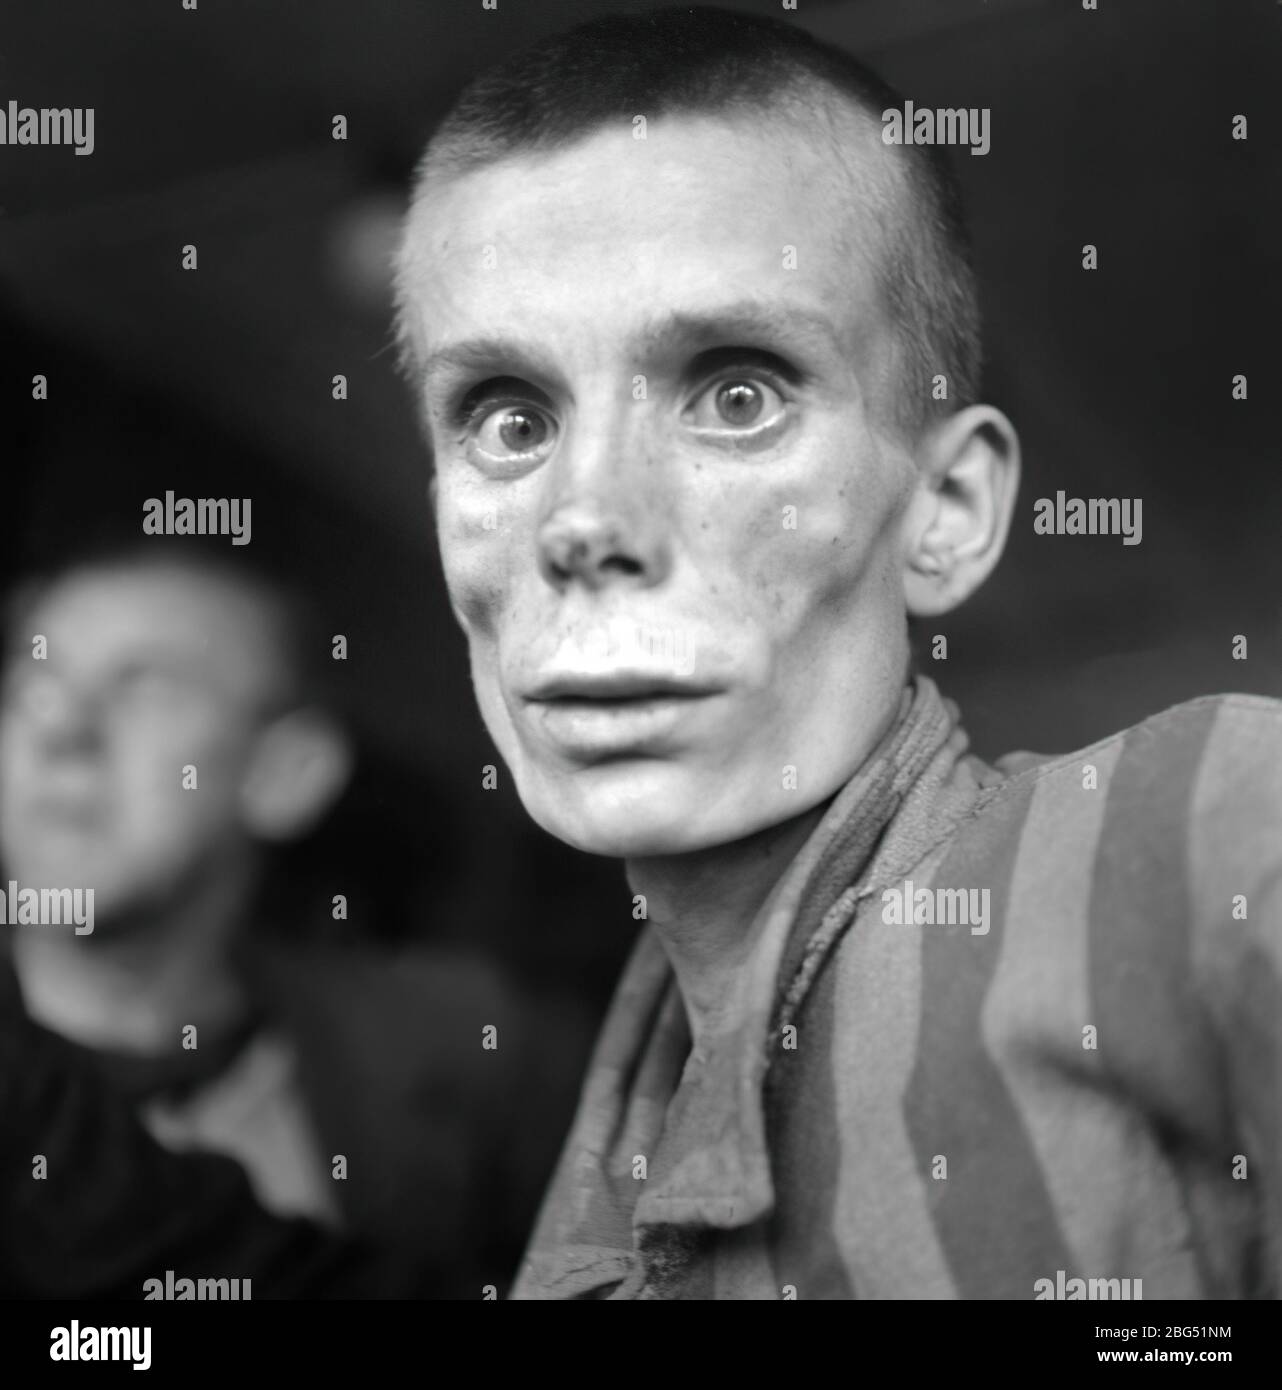 Dokumentation zum Zweiten Weltkrieg. Gefangener des KZ Dachau kurz nach seiner Befreiung durch die US-Streitkräfte im April 1945. Stockfoto